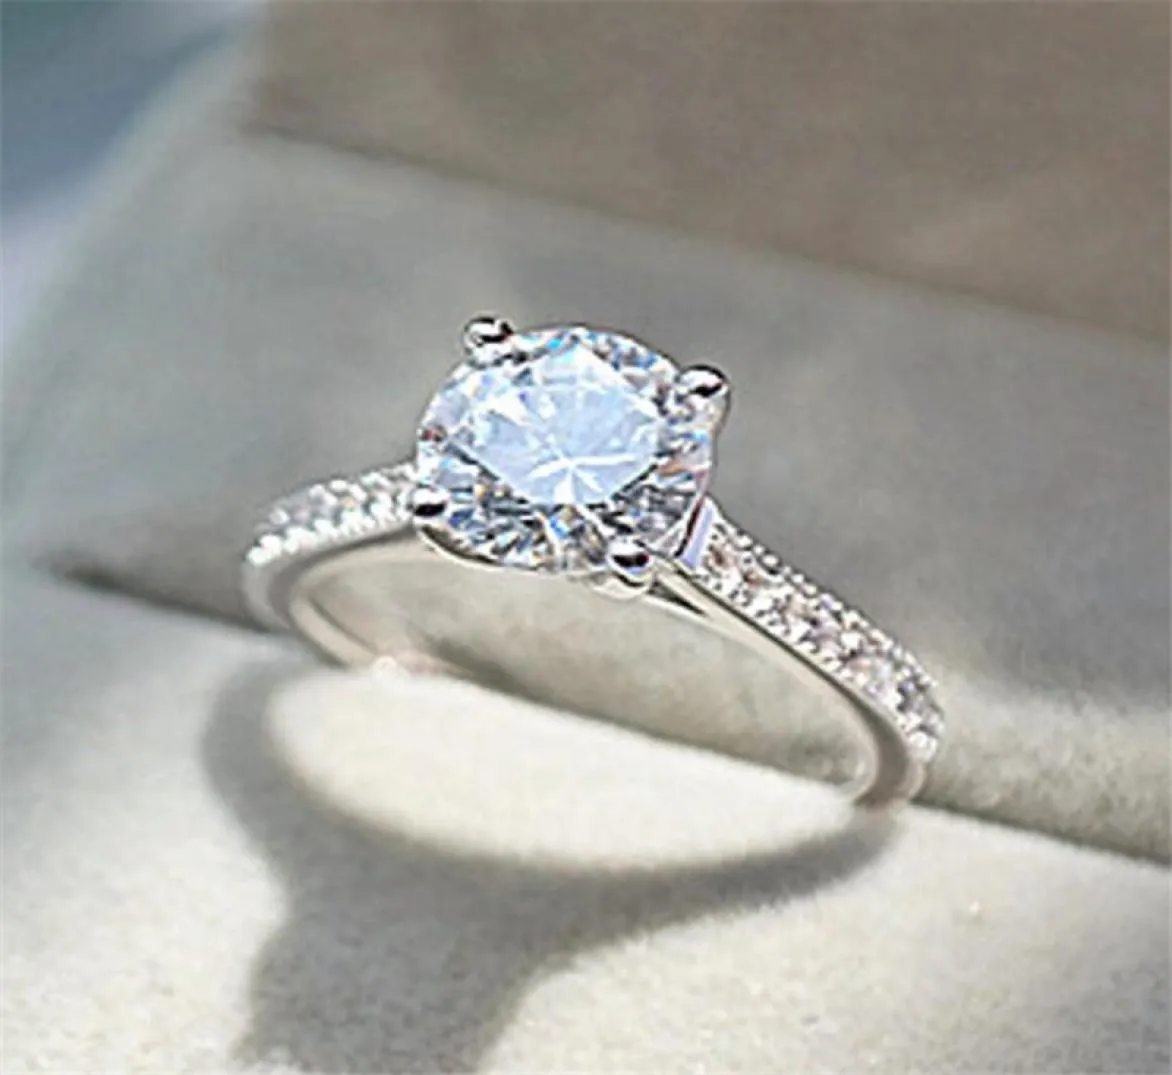 Moda simples jóias exclusivas real 925 prata esterlina corte redondo branco topázio cz diamante pedras preciosas feminino casamento anel de noiva para lo2189398